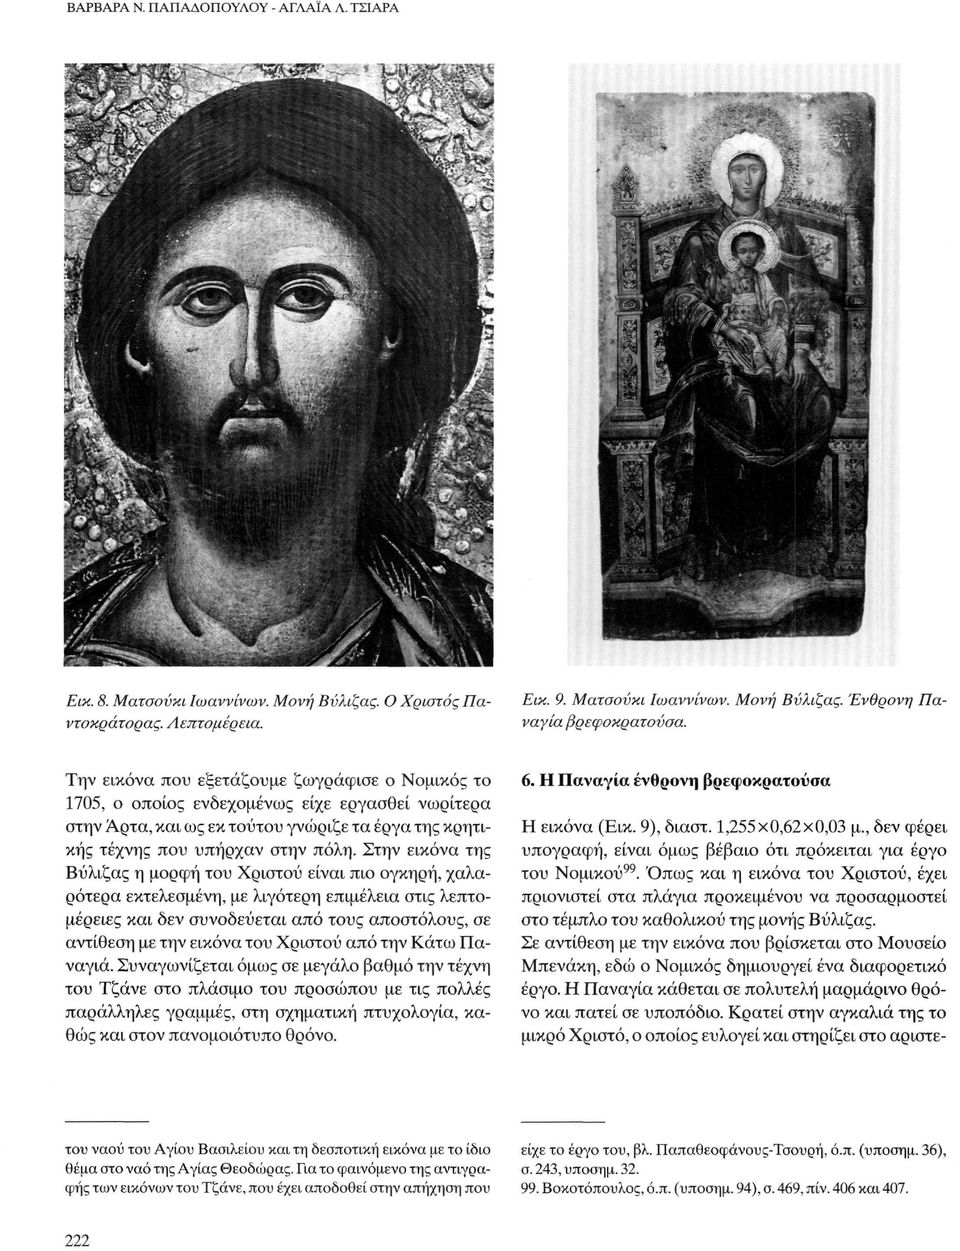 Στην εικόνα της Βύλιζας η μορφή του Χριστού είναι πιο ογκηρή, χαλαρότερα εκτελεσμένη, με λιγότερη επιμέλεια στις λεπτομέρειες και δεν συνοδεύεται από τους αποστόλους, σε αντίθεση με την εικόνα του